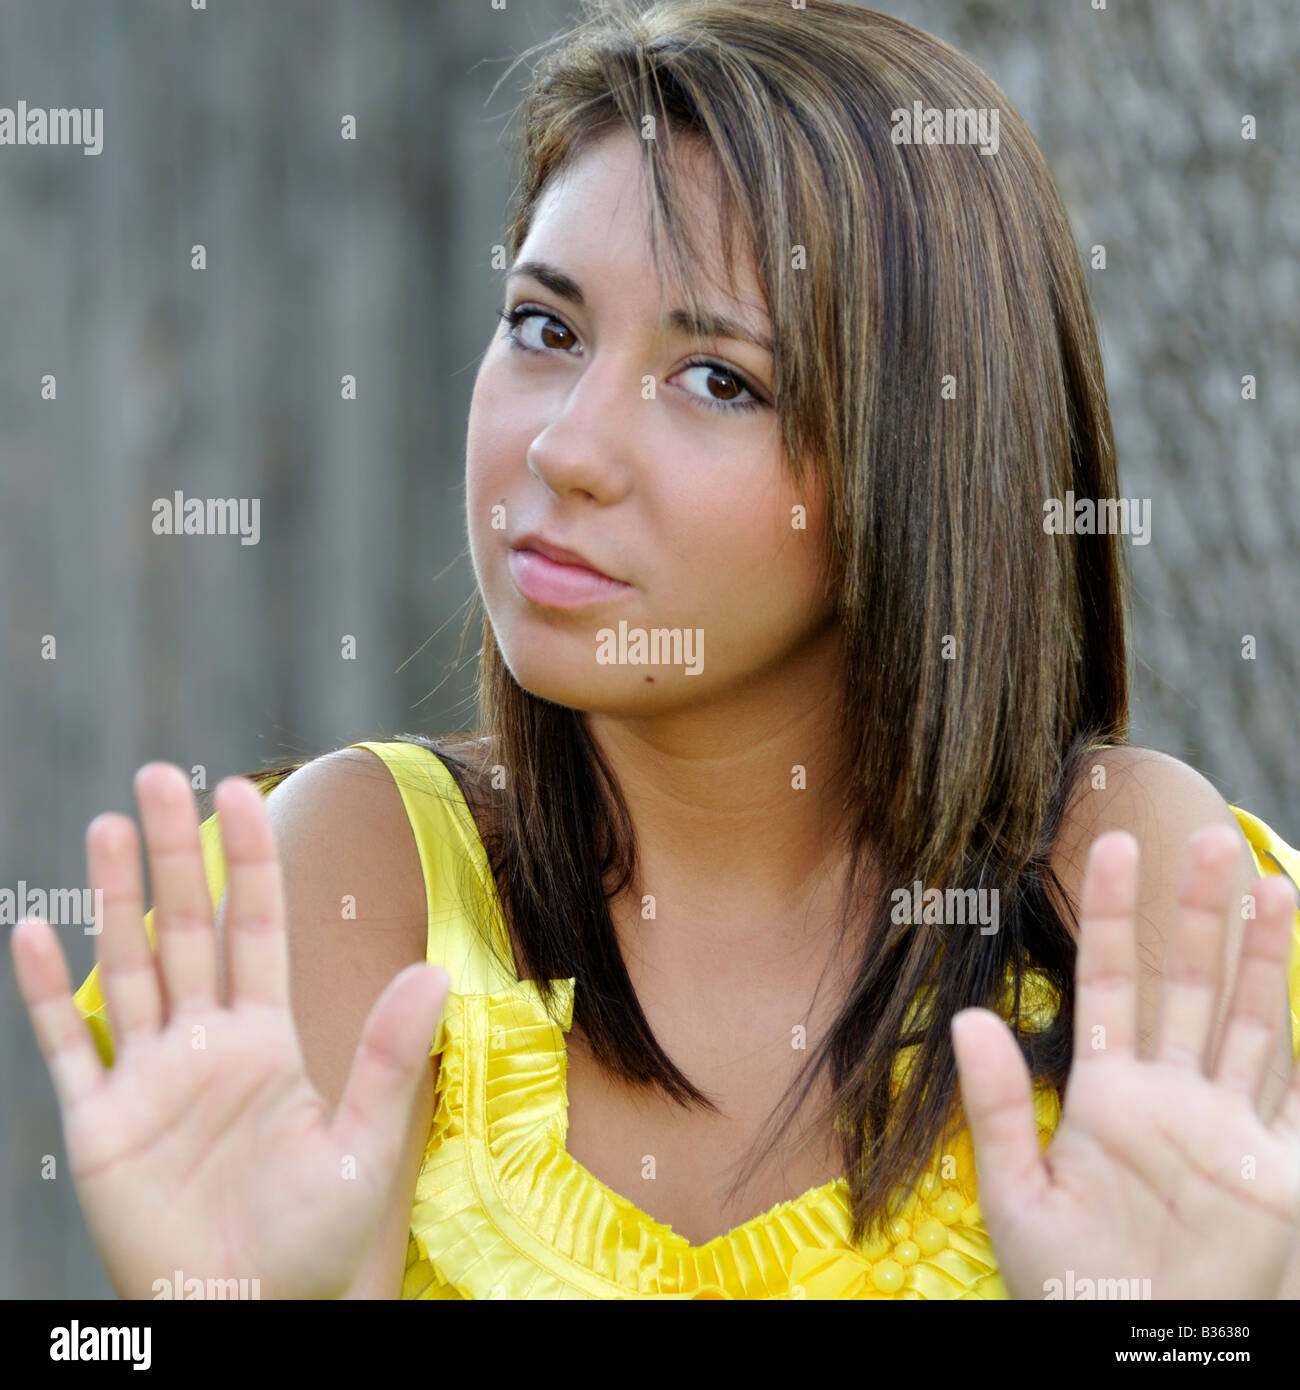 16 ans, jolie jeune fille de race blanche, cheveux bruns, yeux bruns, tient ses mains dans un geste de résister. Image conceptuelle. Banque D'Images